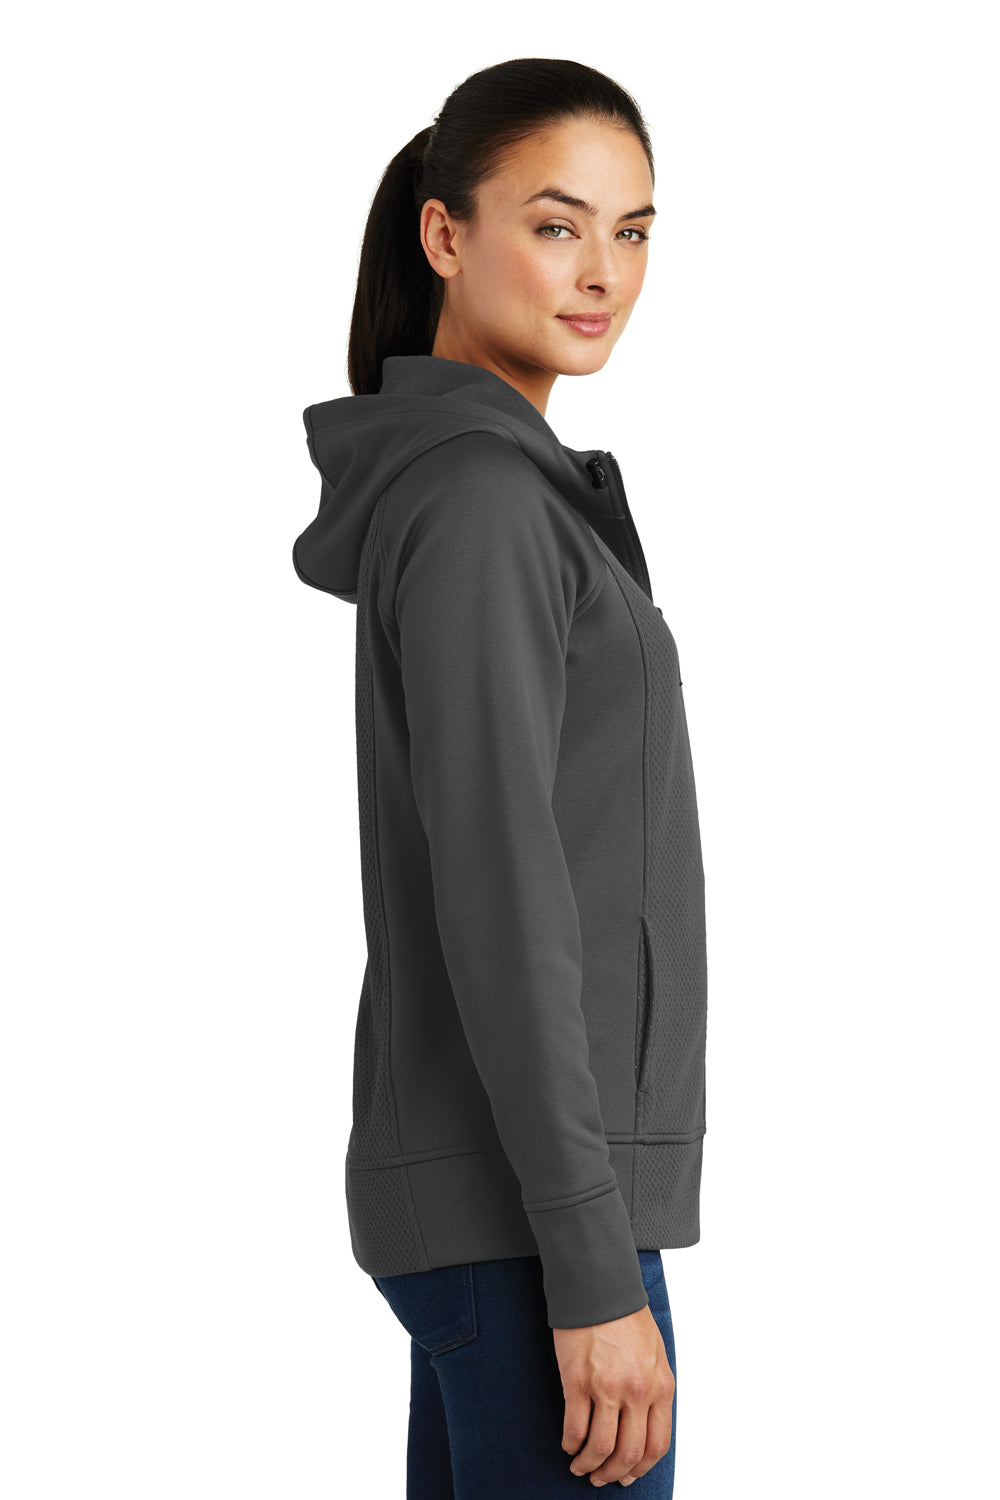 Sport-Tek LST295 Womens Rival Tech Moisture Wicking Fleece Full Zip Hooded Sweatshirt Hoodie Grey Side